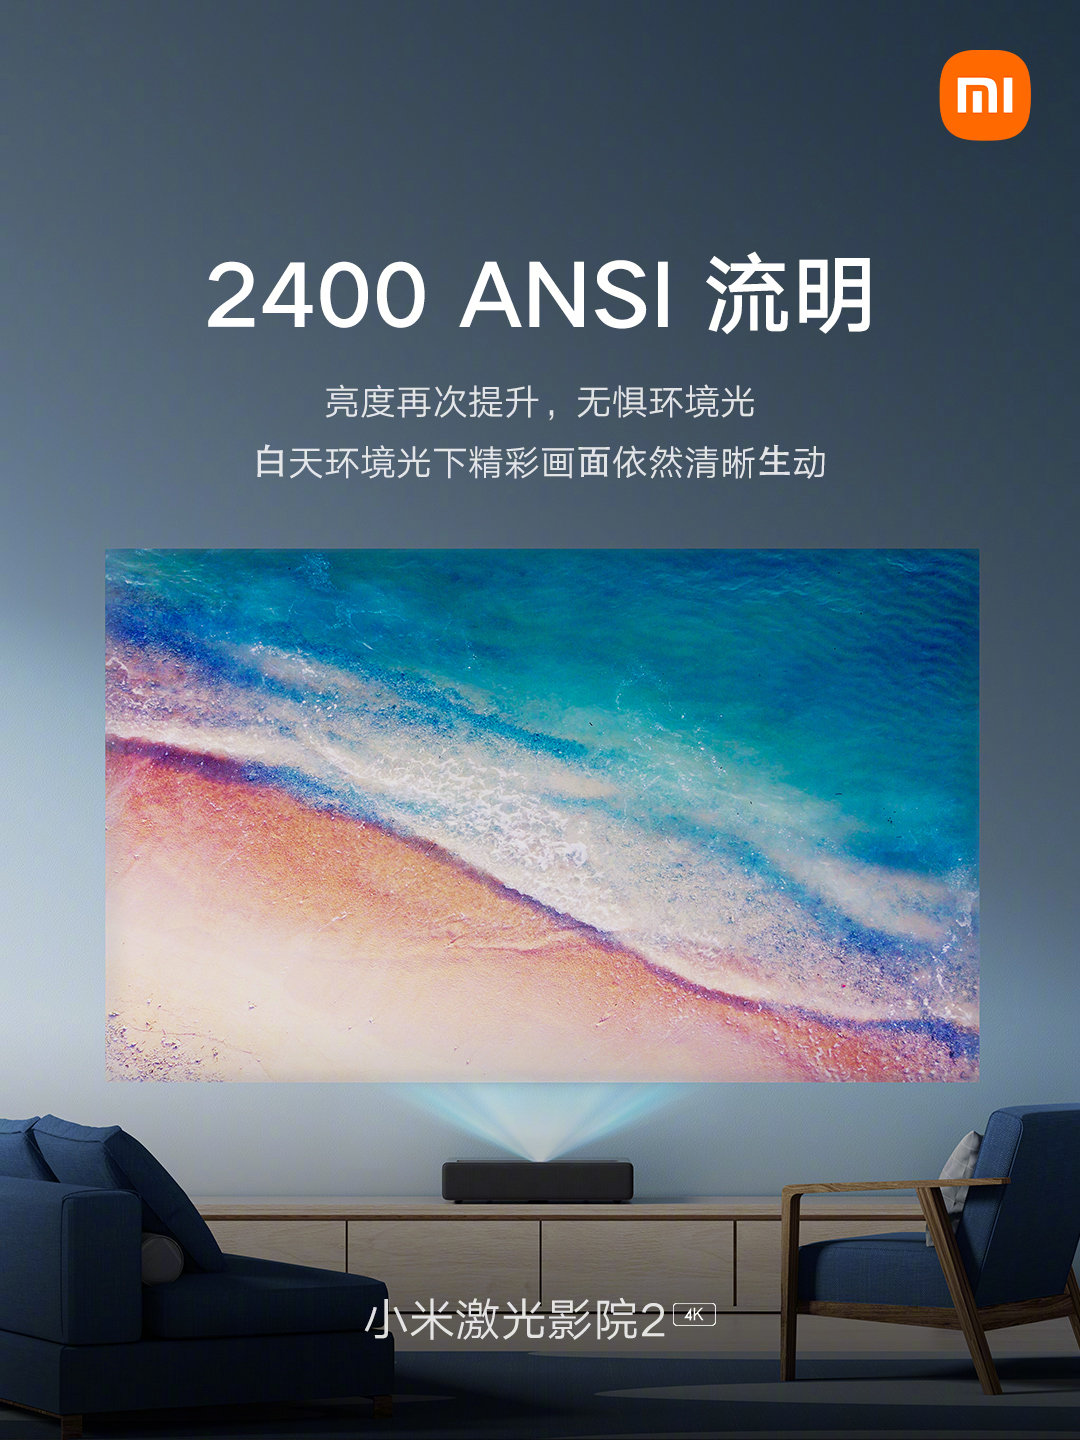 Nuevo Xiaomi Laser Cinema 2 4K: características, precio y ficha